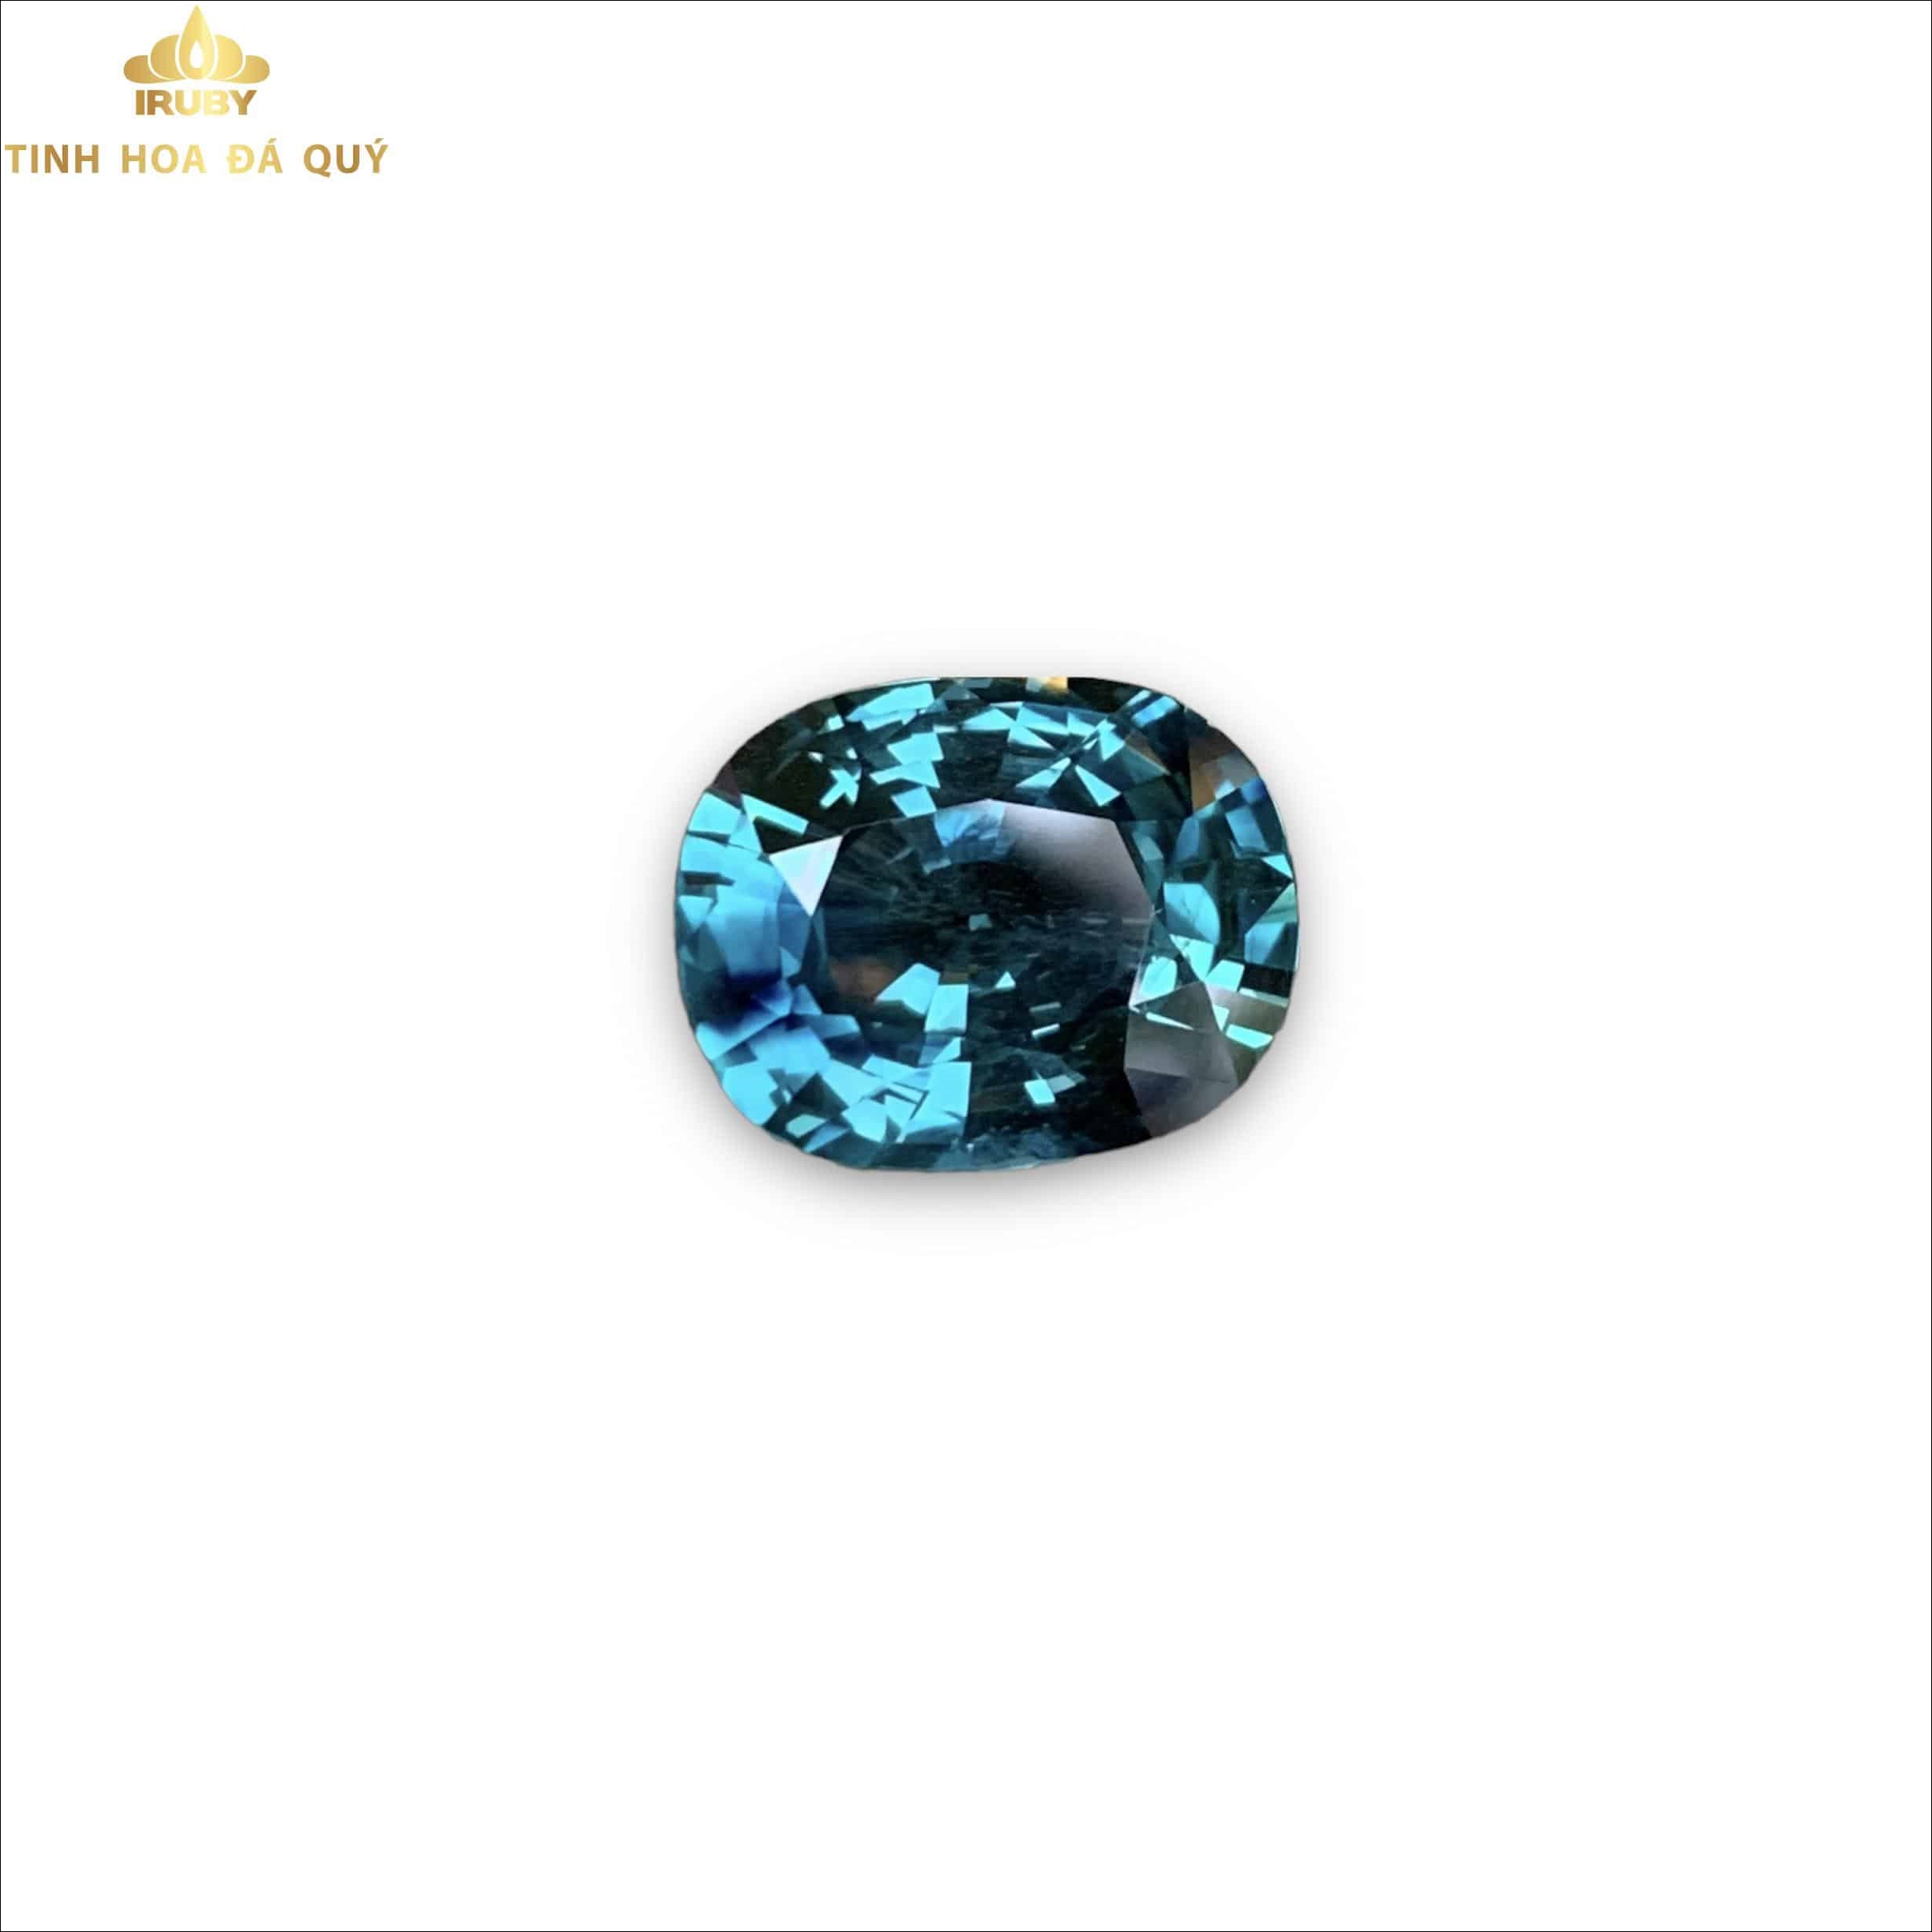 Viên Sapphire xanh sắc hiếm 13,25ct - IRSA 23021325